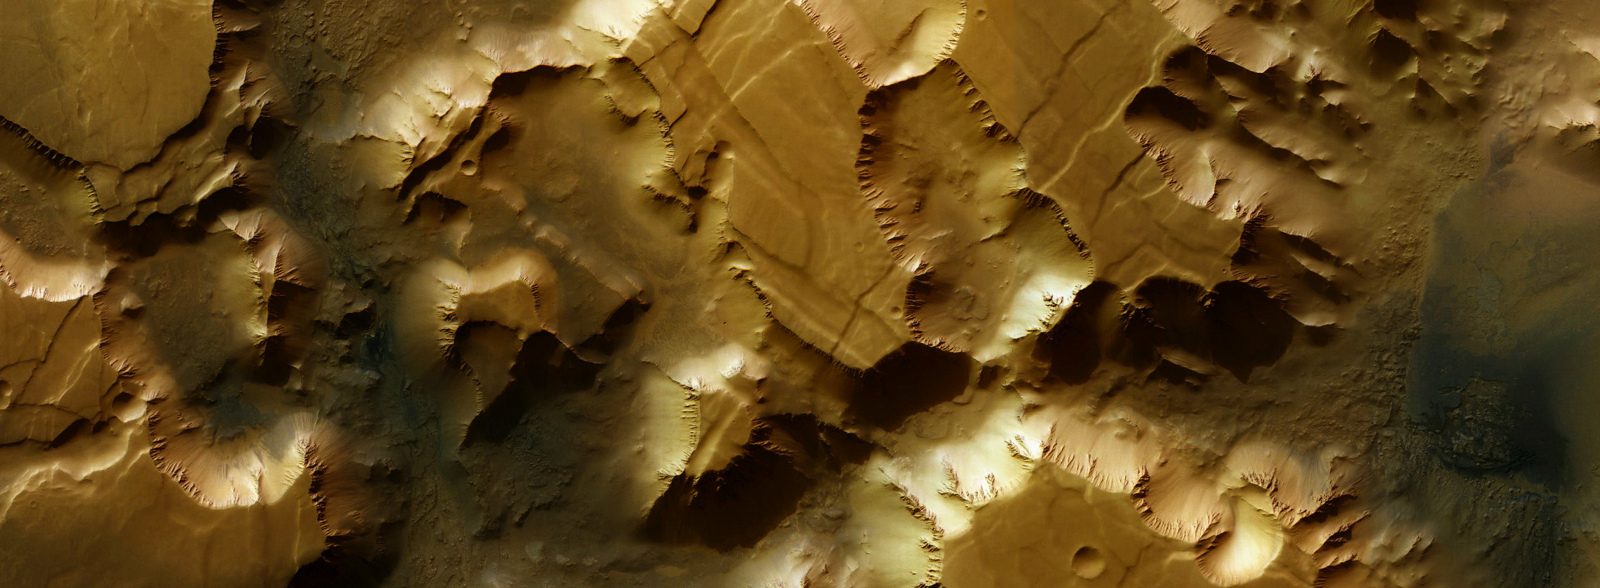 Mosaïque de Noctis Labyrinthus (Noctis Labyrinthus), image Mars Express.